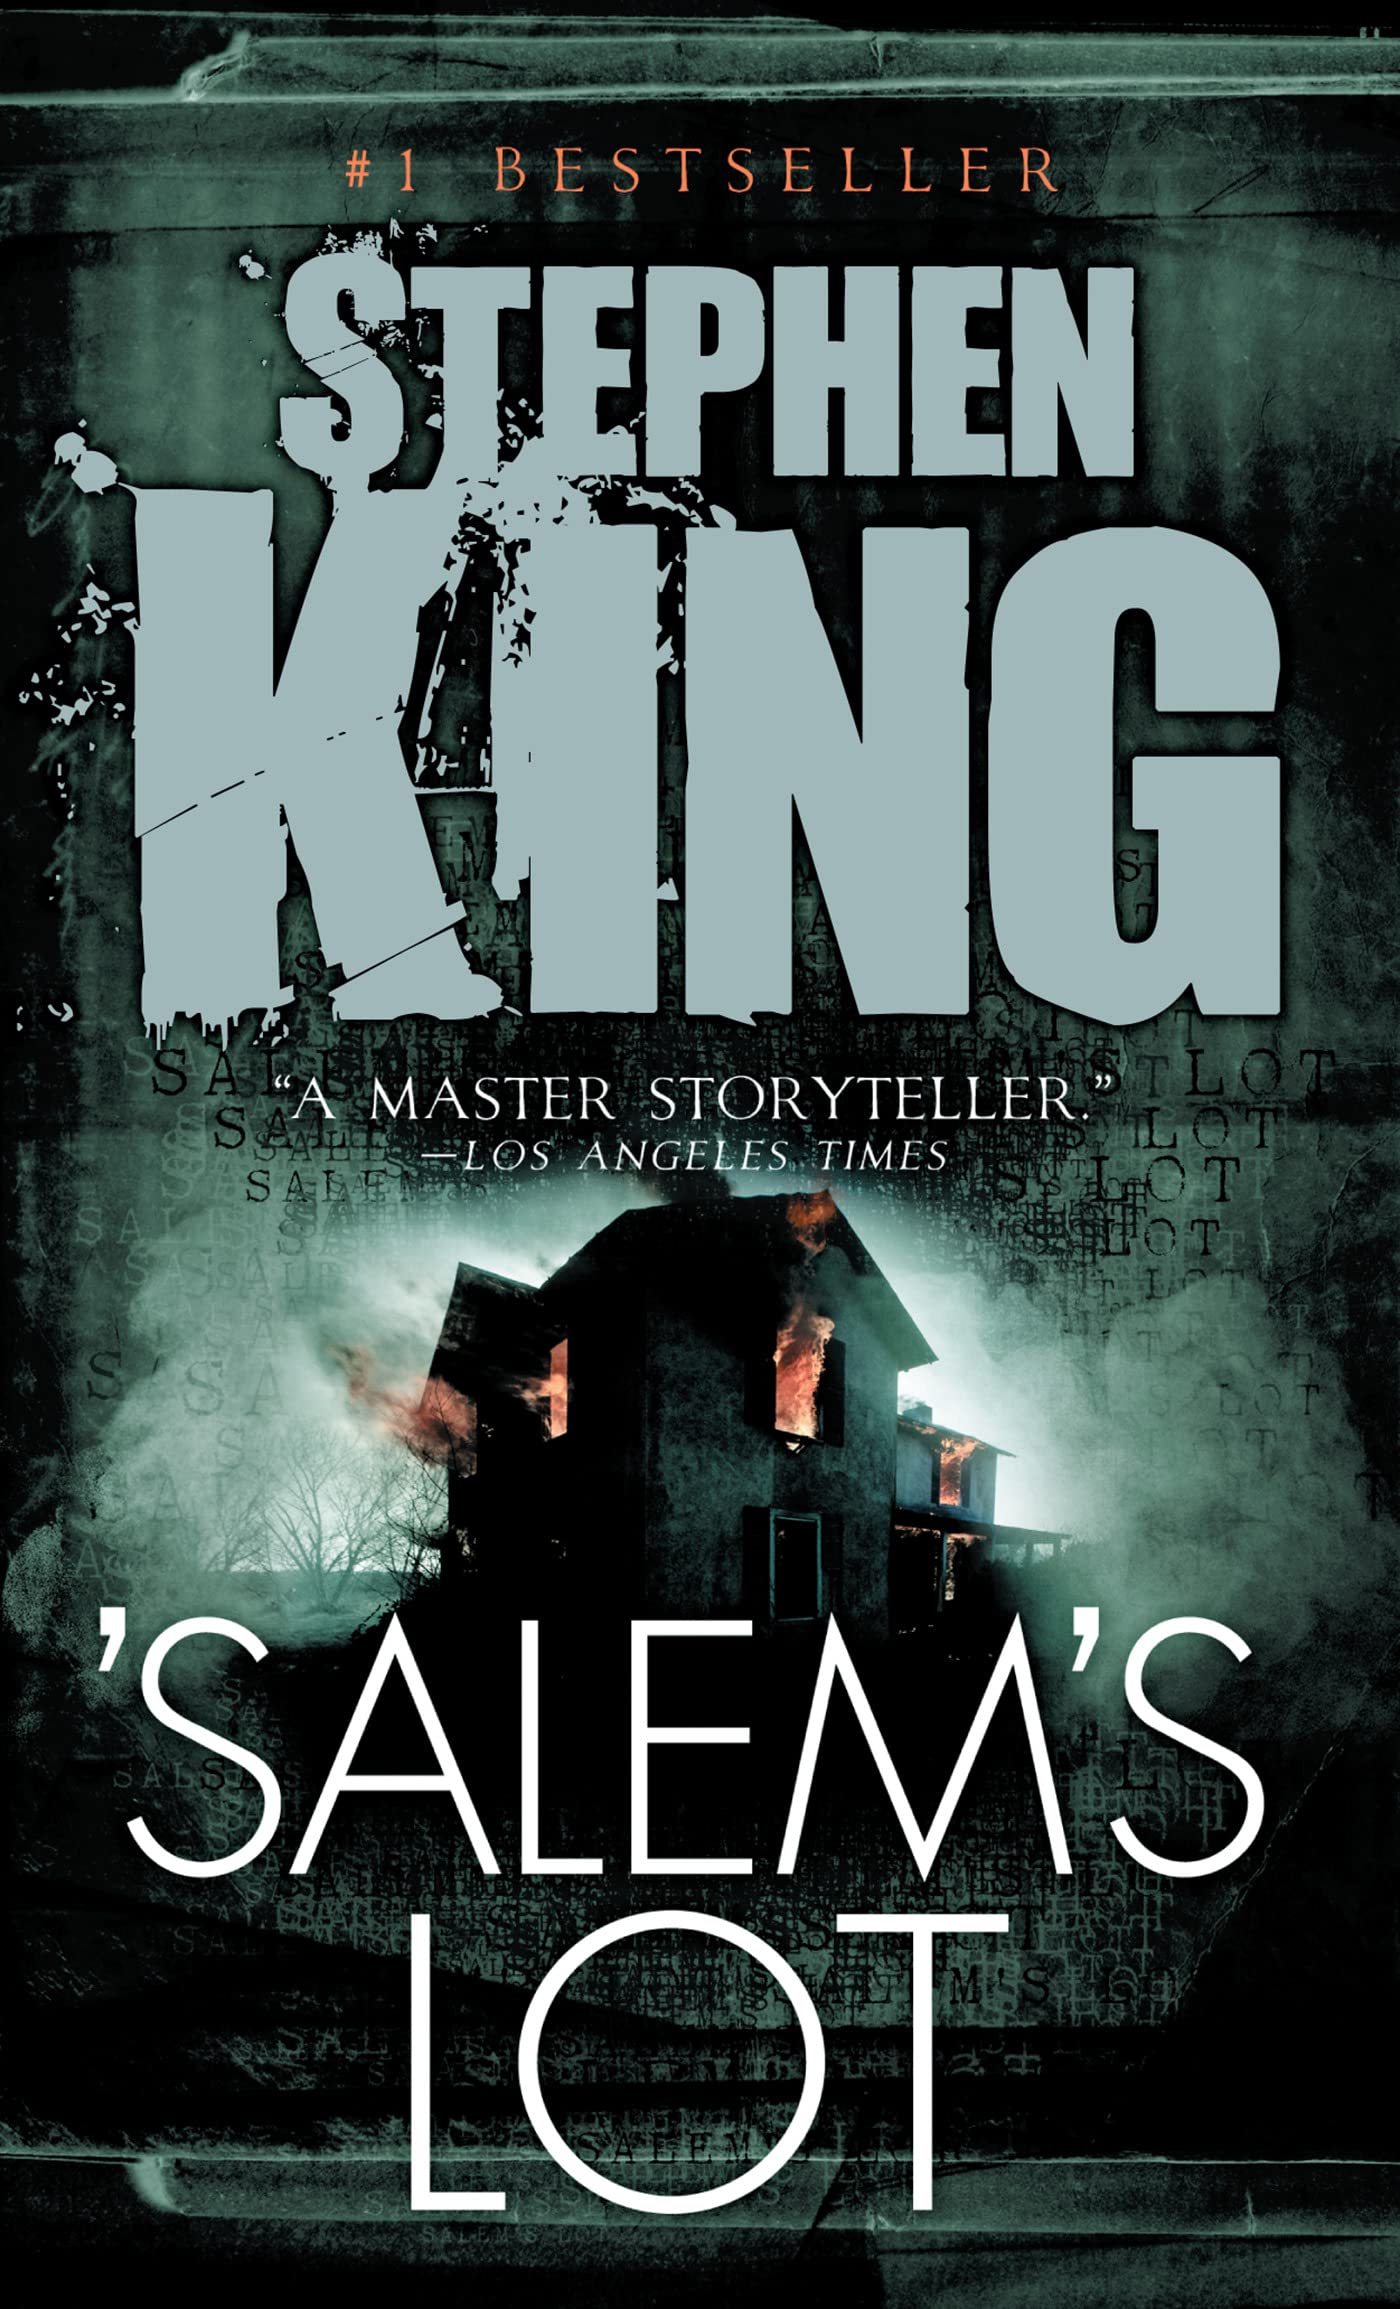 'Salem's Lot (eBook) by Stephen King $1.99